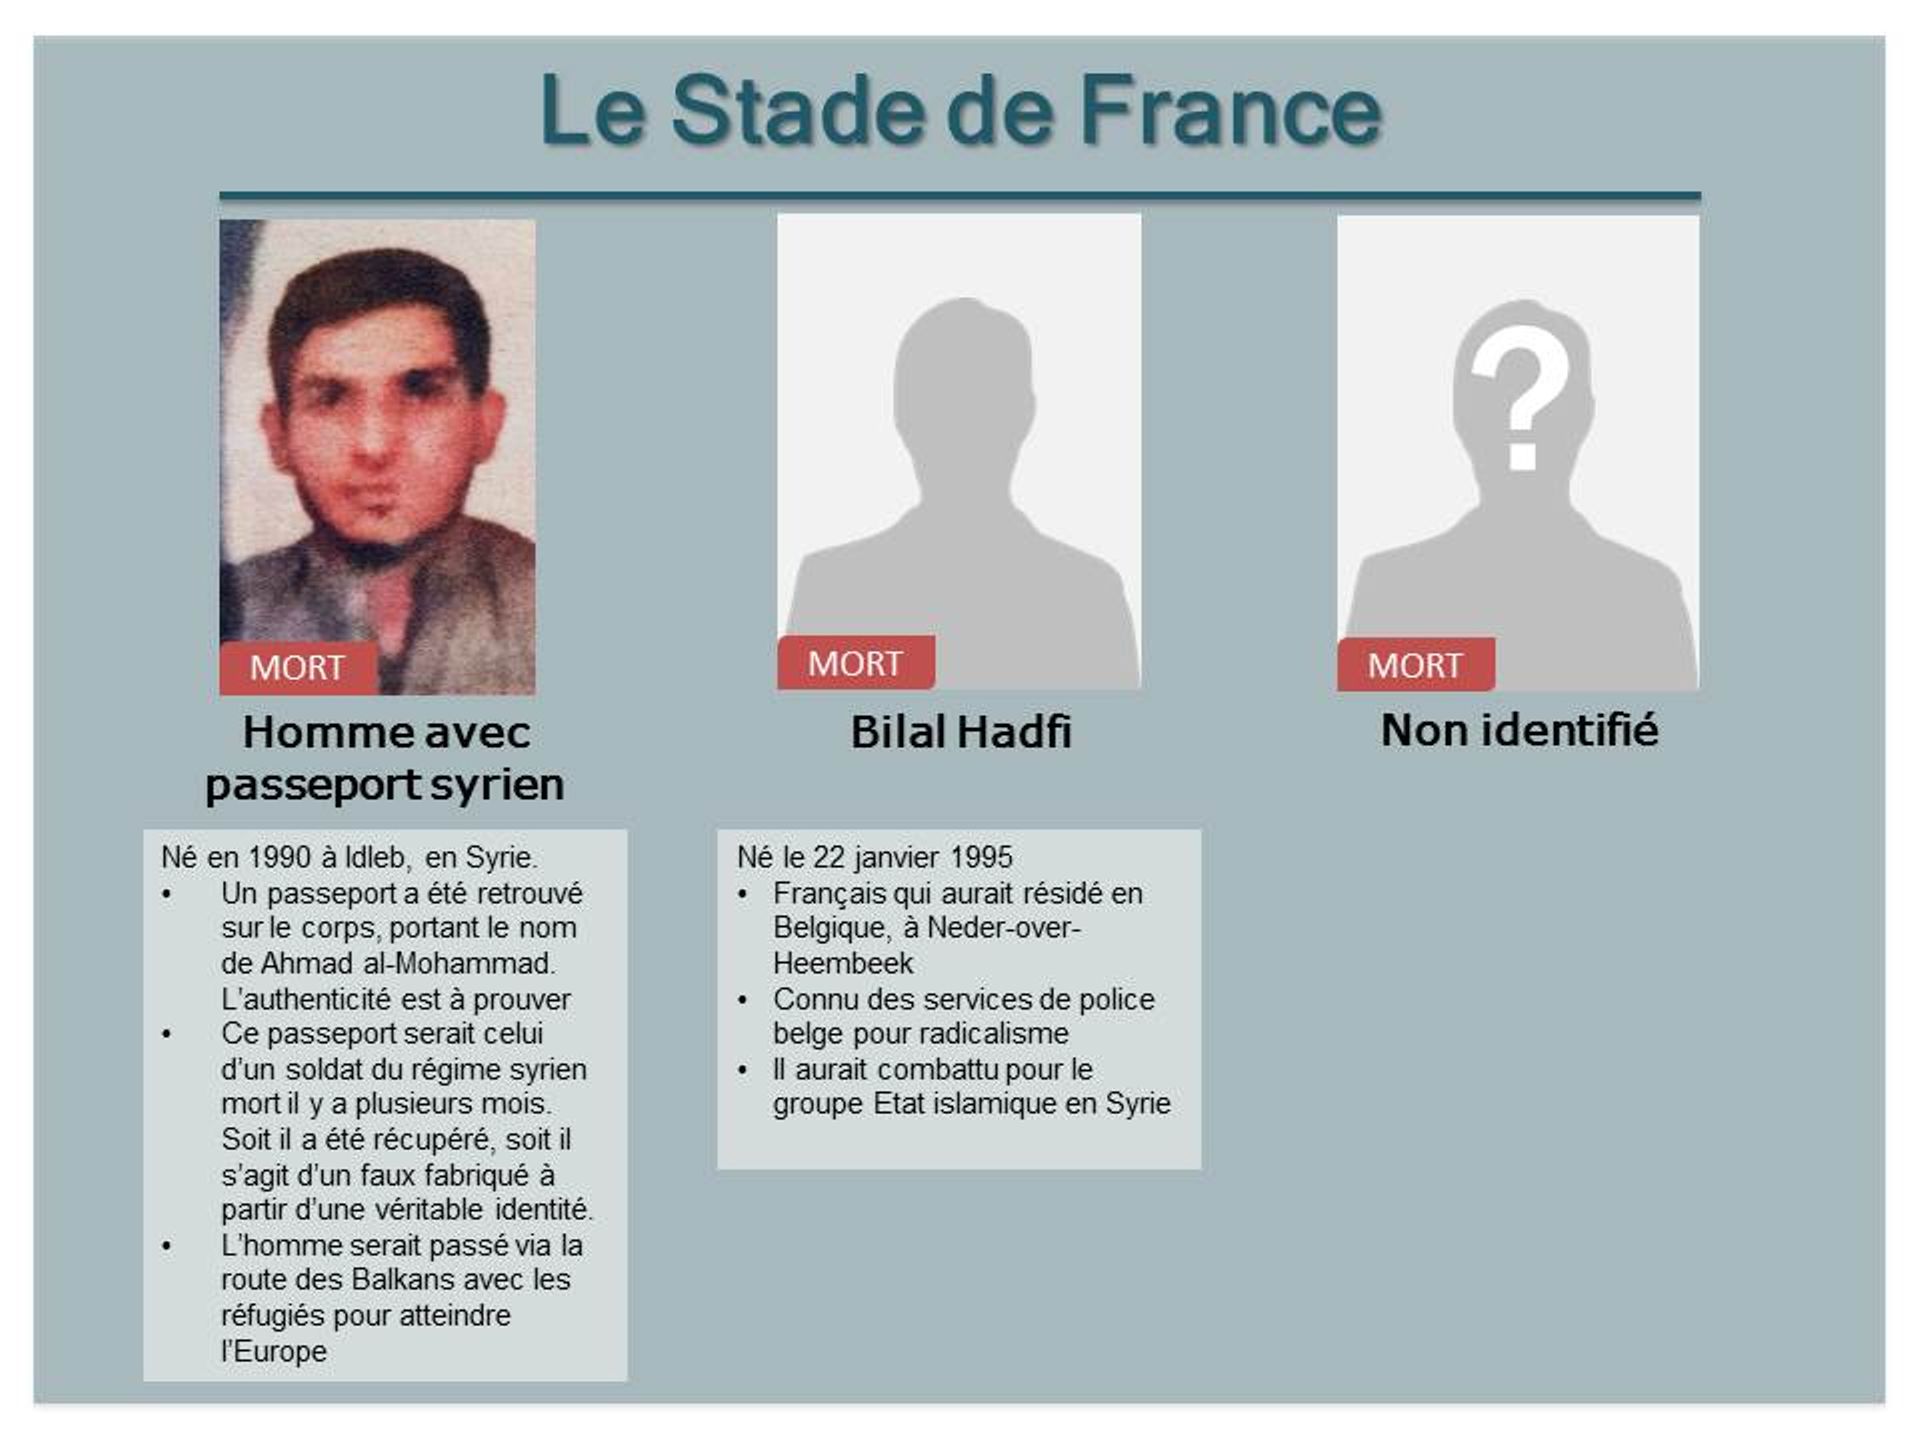 Les trois terroristes qui se sont fait exploser au Stade de France